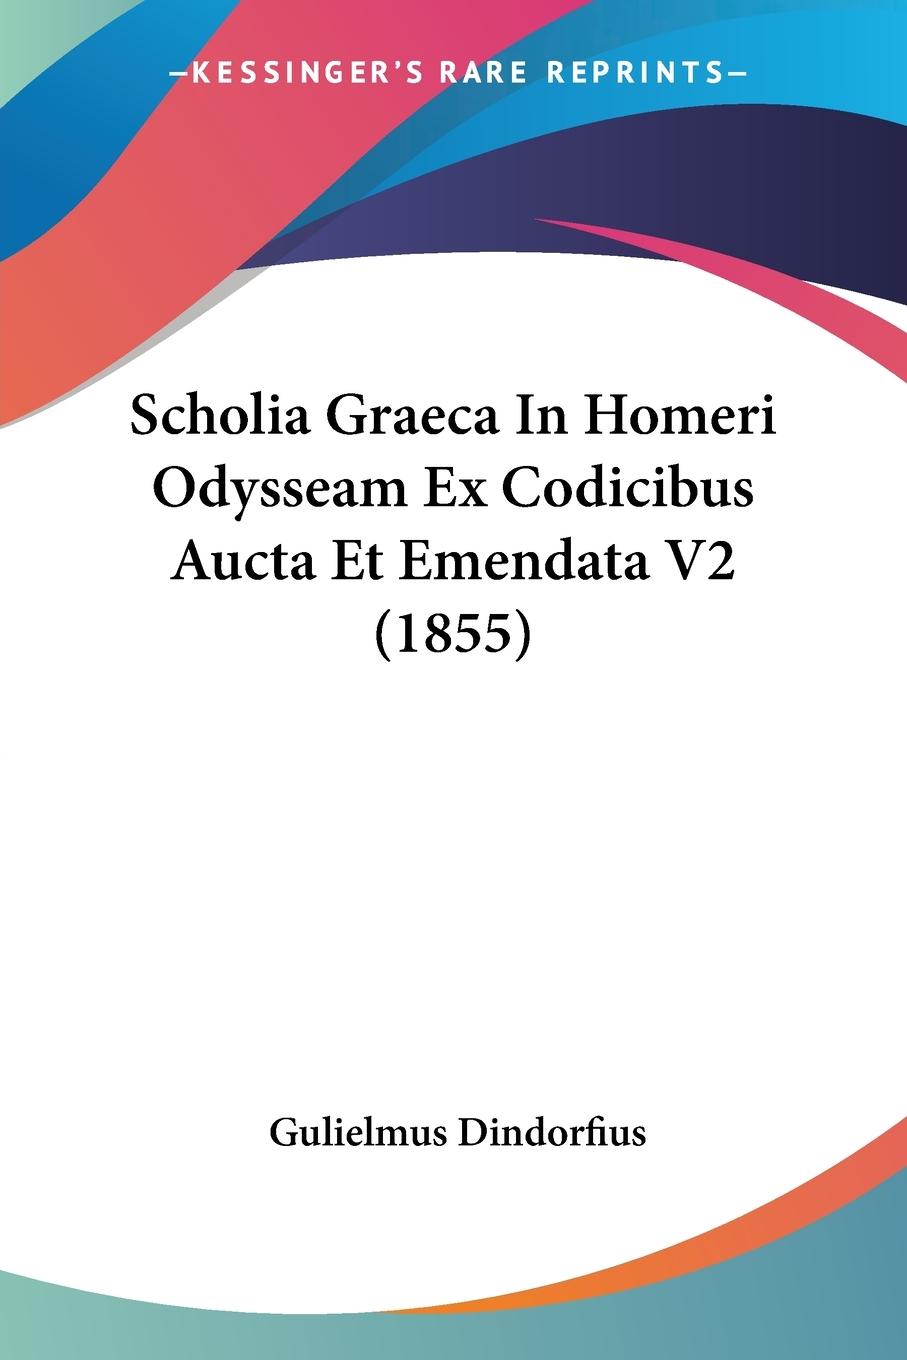 Scholia Graeca In Homeri Odysseam Ex Codicibus Aucta Et Emendata V2 (1855) - Dindorfius, Gulielmus